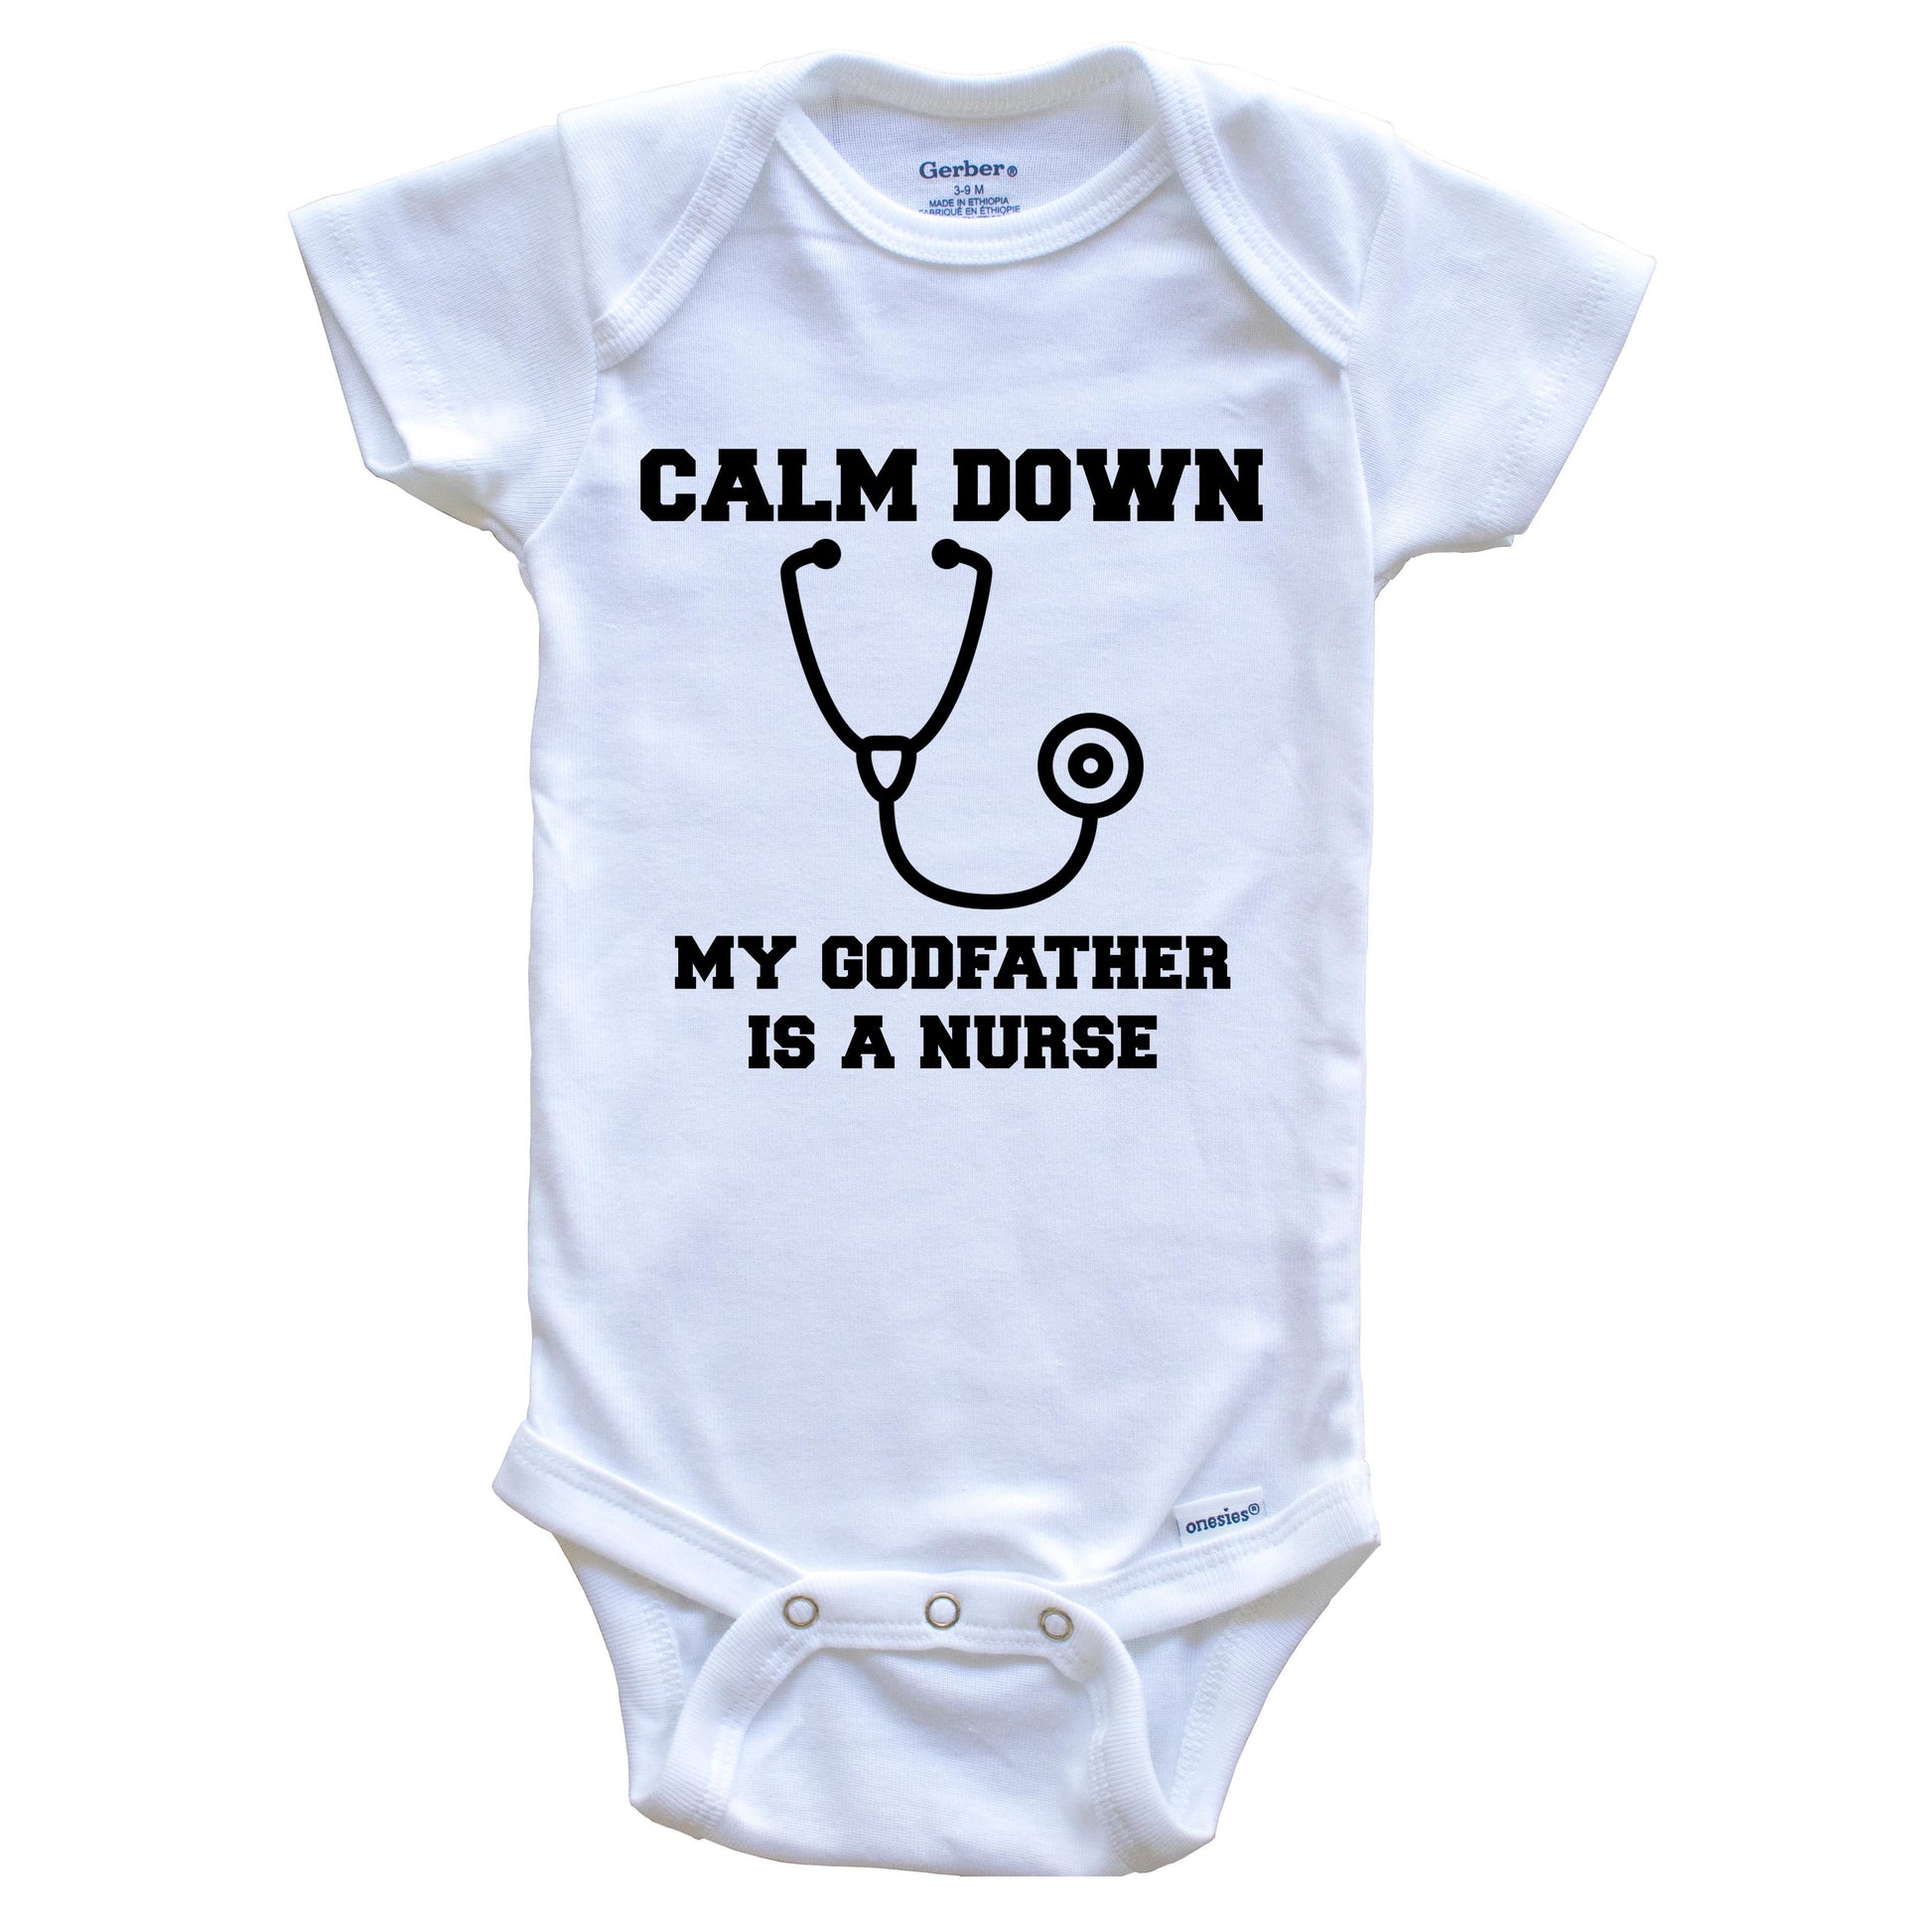 Calm Down My Godfather Is A Nurse Funny Baby Onesie - One Piece Baby Bodysuit